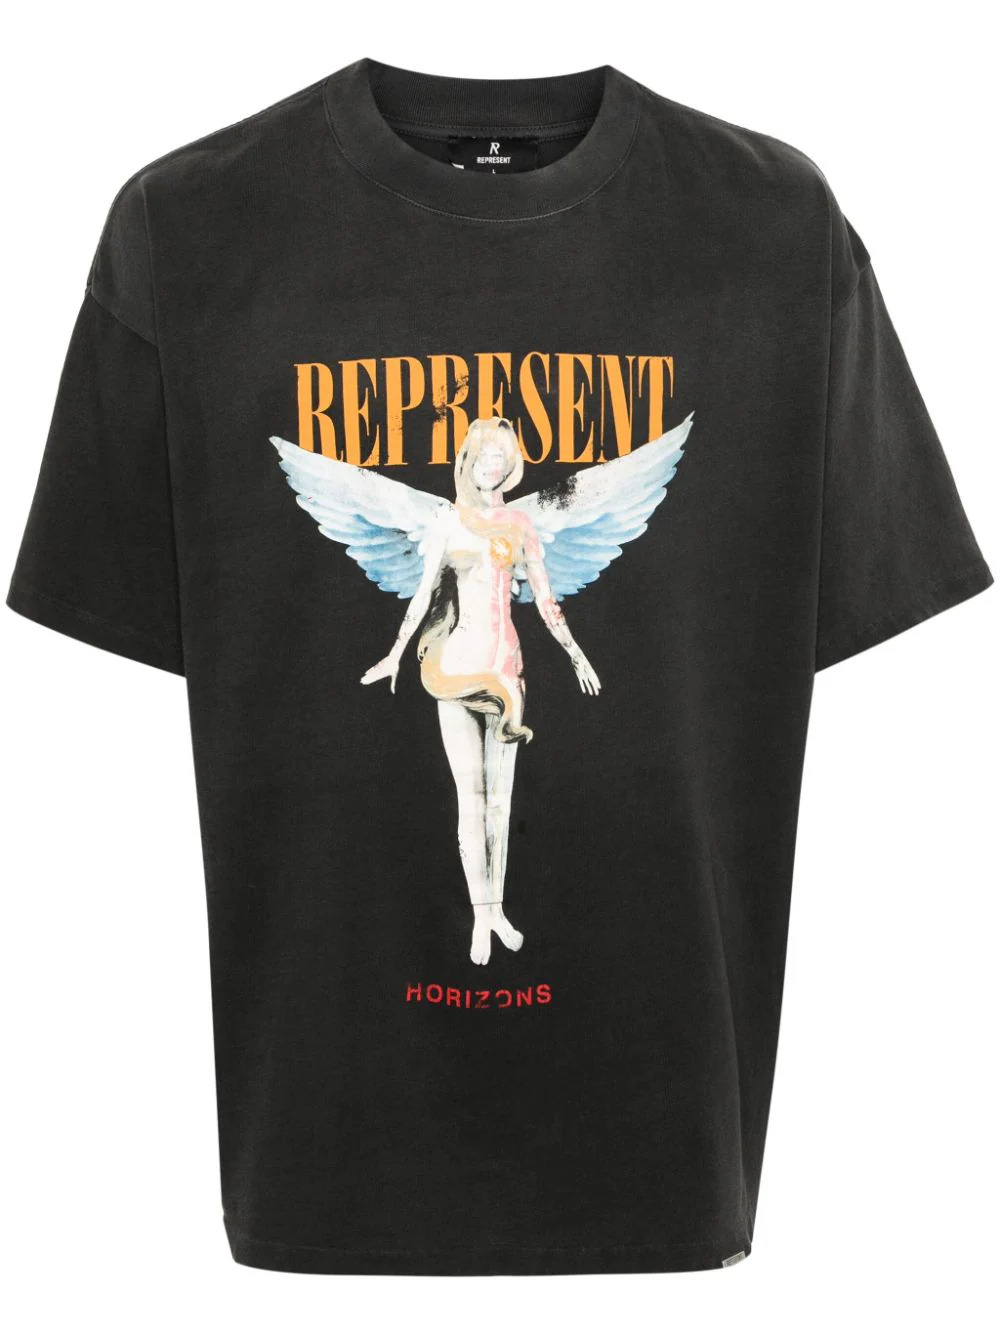 Reborn T-Shirt